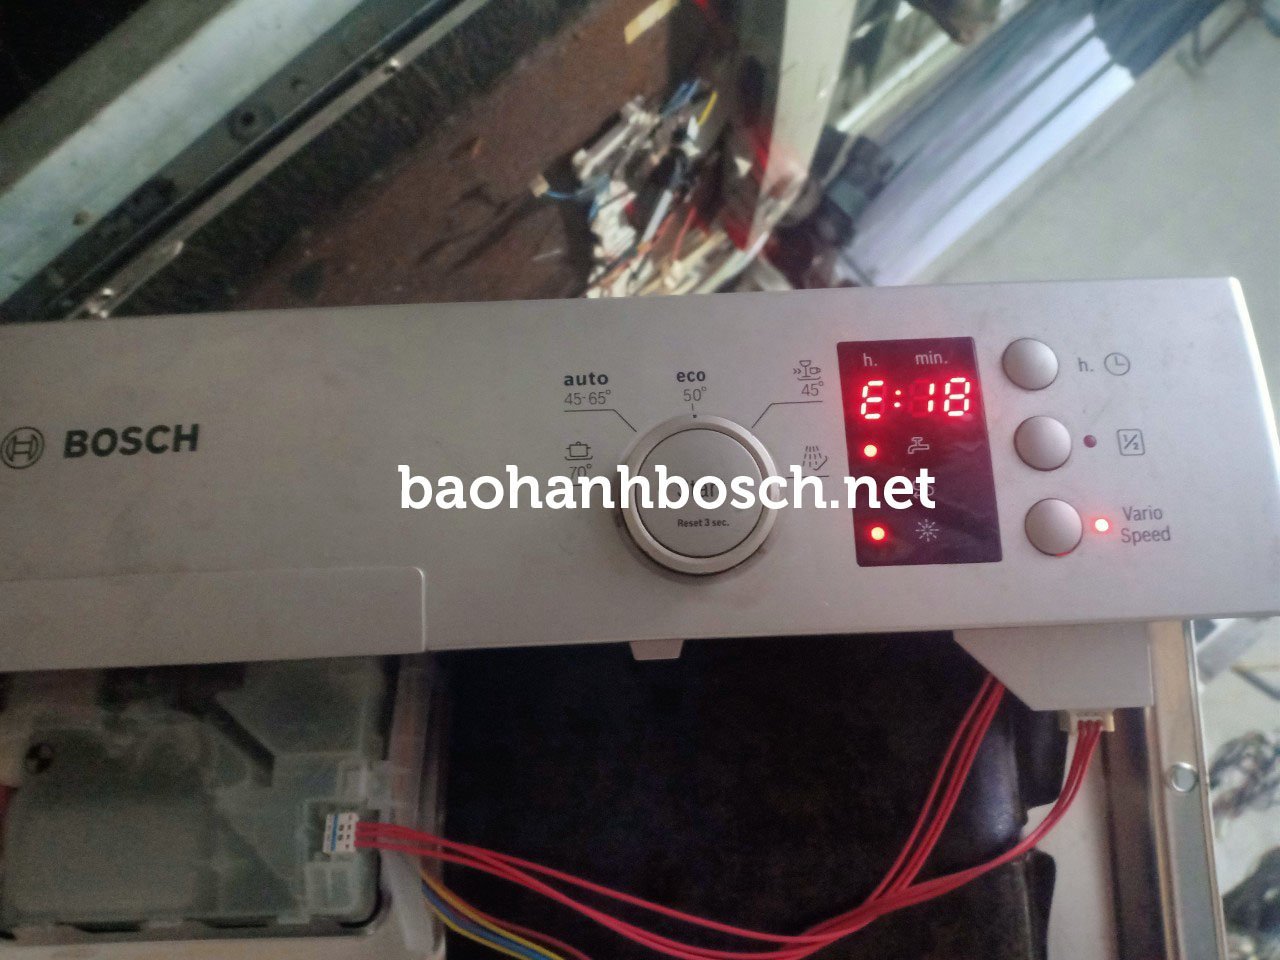 Sửa chữa máy rửa bát Bosch tại nhà, toàn khu vực Hà Nội